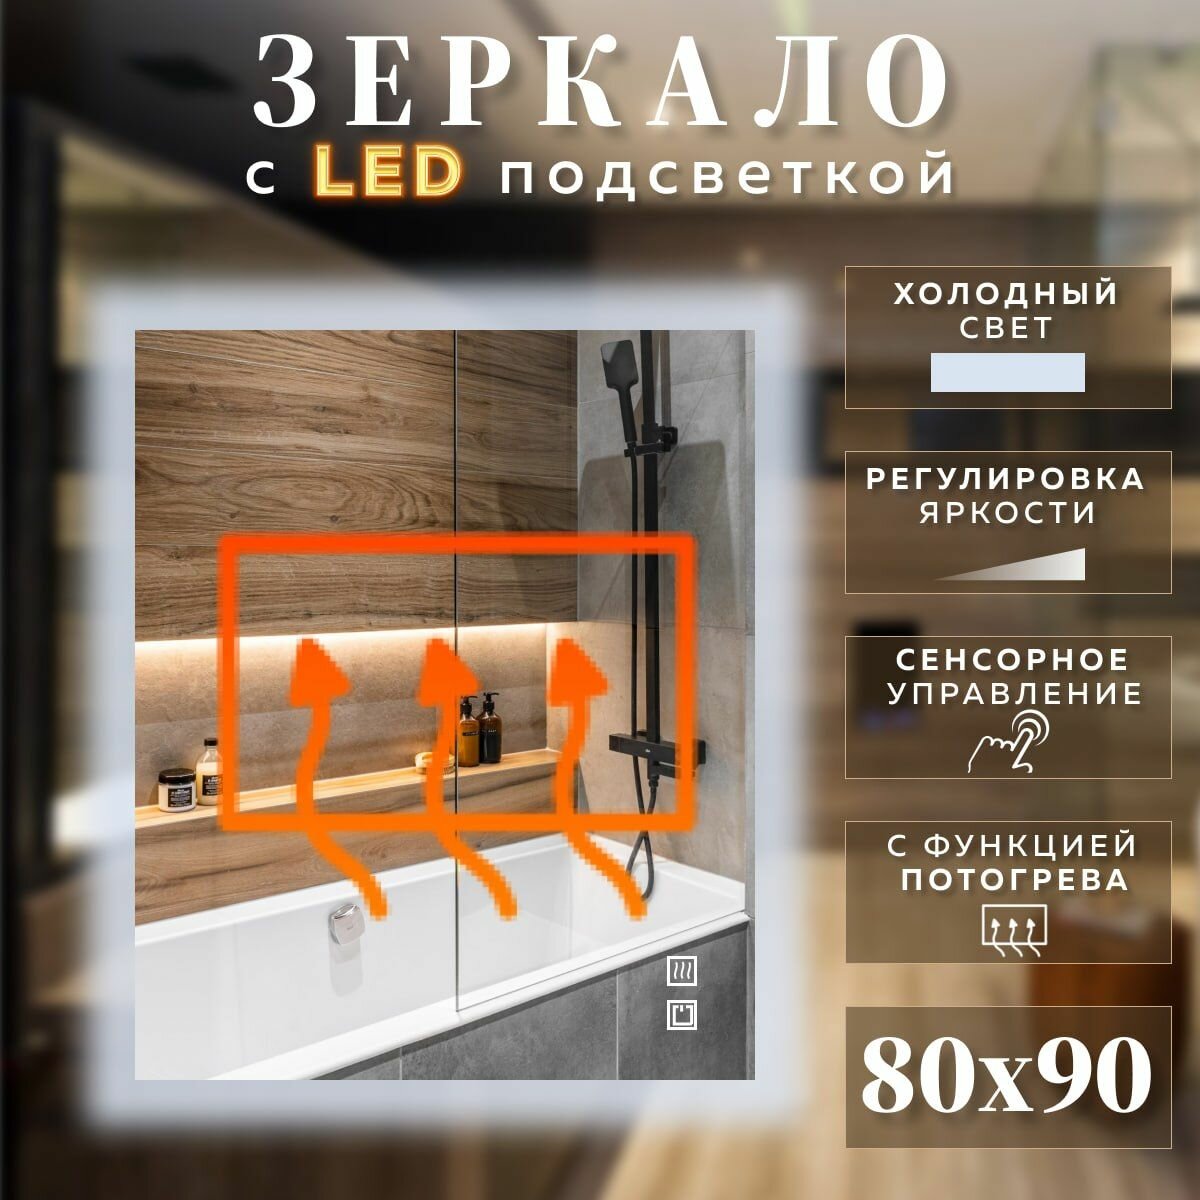 Зеркало с подсветкой для ванной прямоугольное холодный свет 6000К с сенсорным управлением и подогревом 80 на 90 см